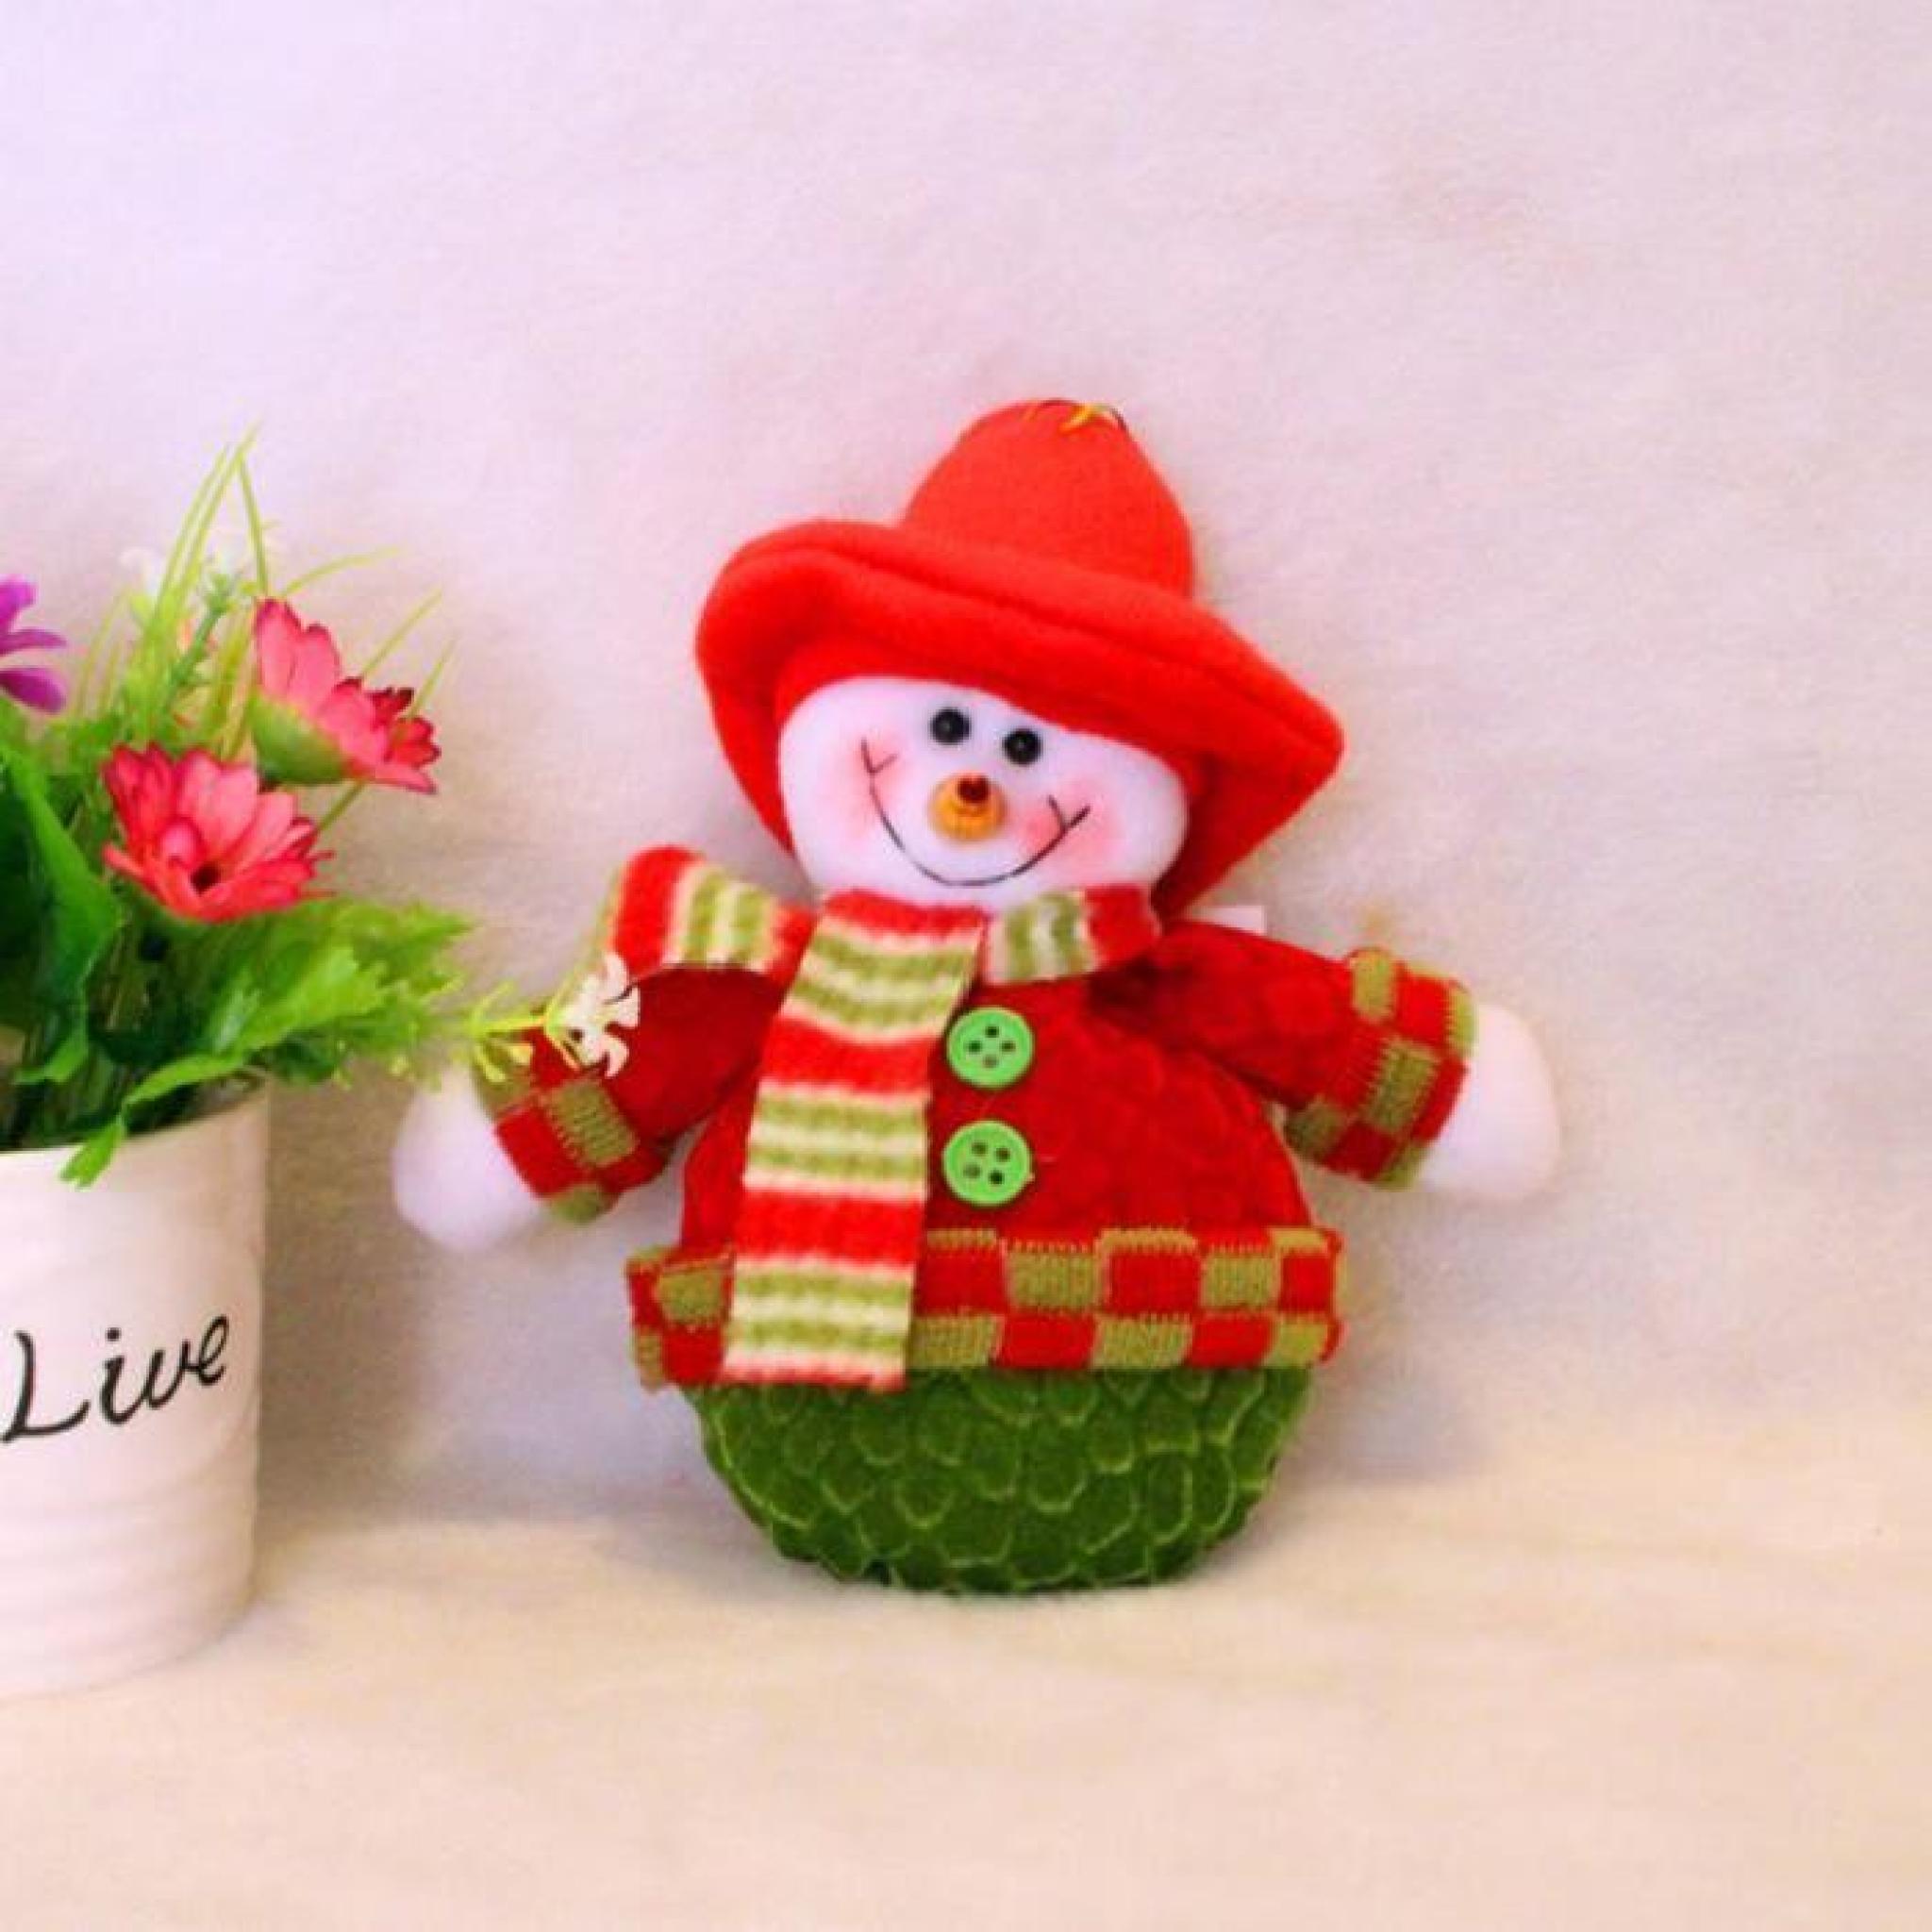 Lily royals®  3pcs Santa Claus Bonhomme de neige Santa Elf Porte de Noël Hanging arbre de Noël Hanging ornement Décoration de Noël pas cher